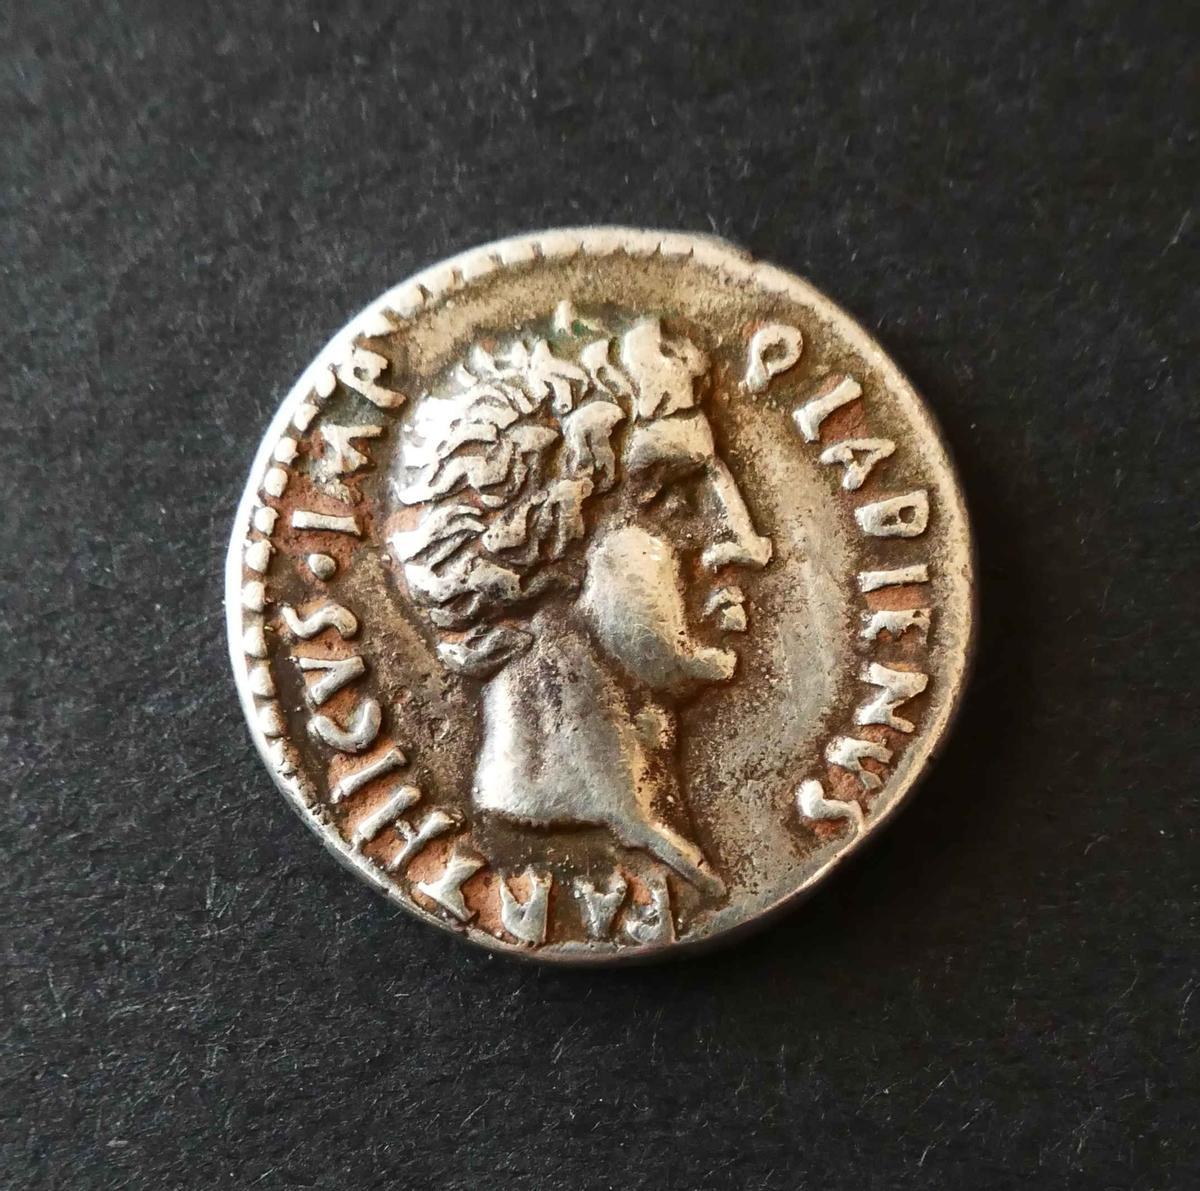 Moneda romana republicana de plata, con acuñación de Tito Labieno.